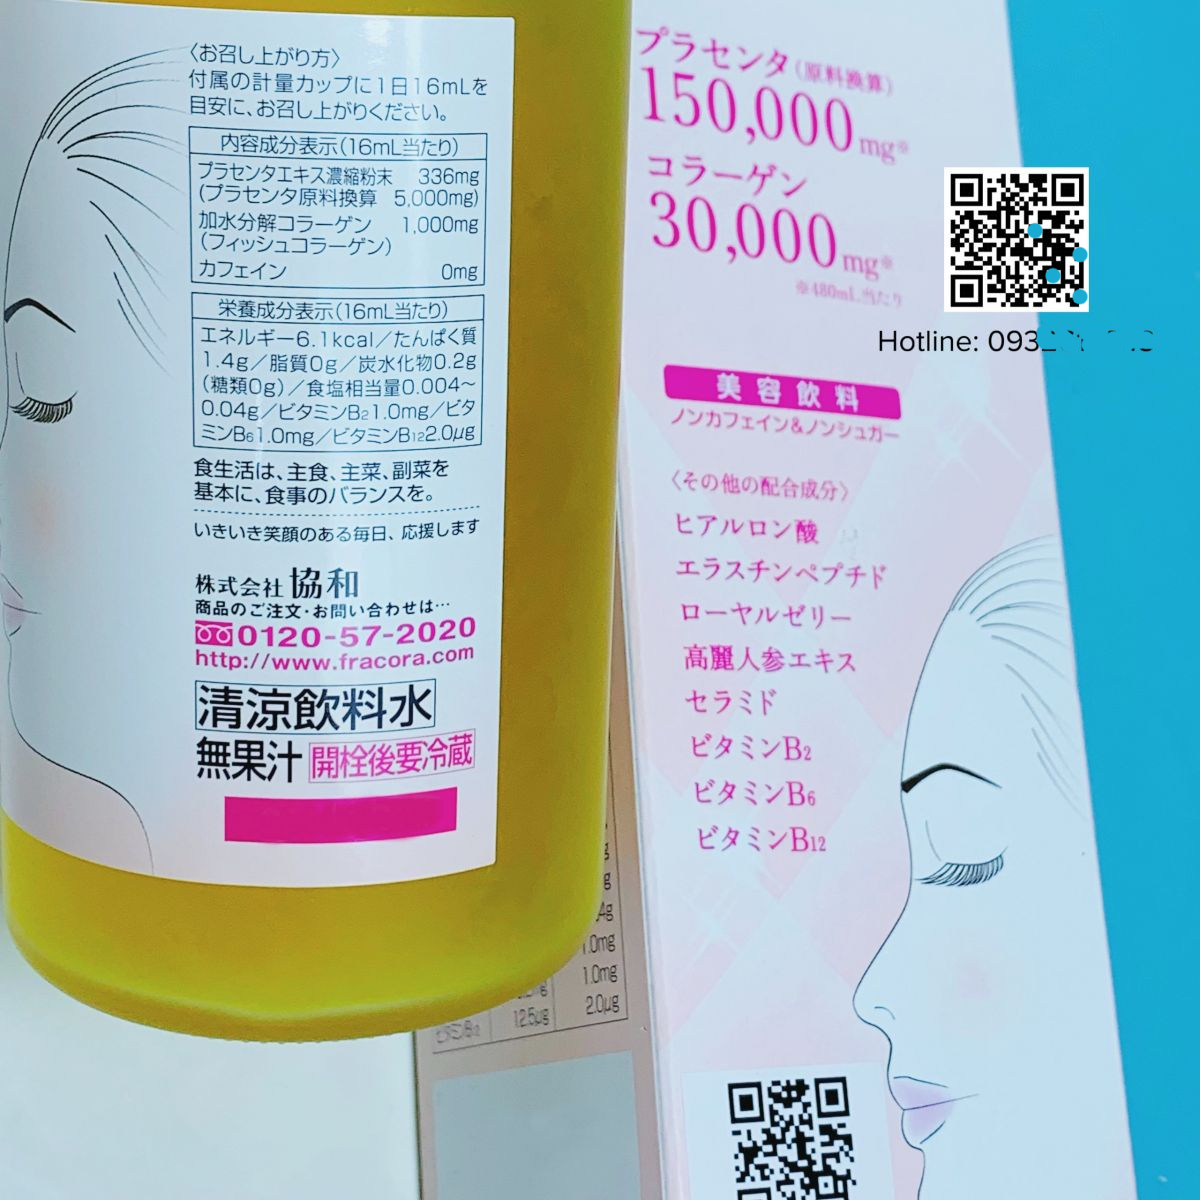 Nước Uống Đẹp Da Fracora Placenta 150000mg Collagen 30000mg Từ Nhật Bản (480ml)